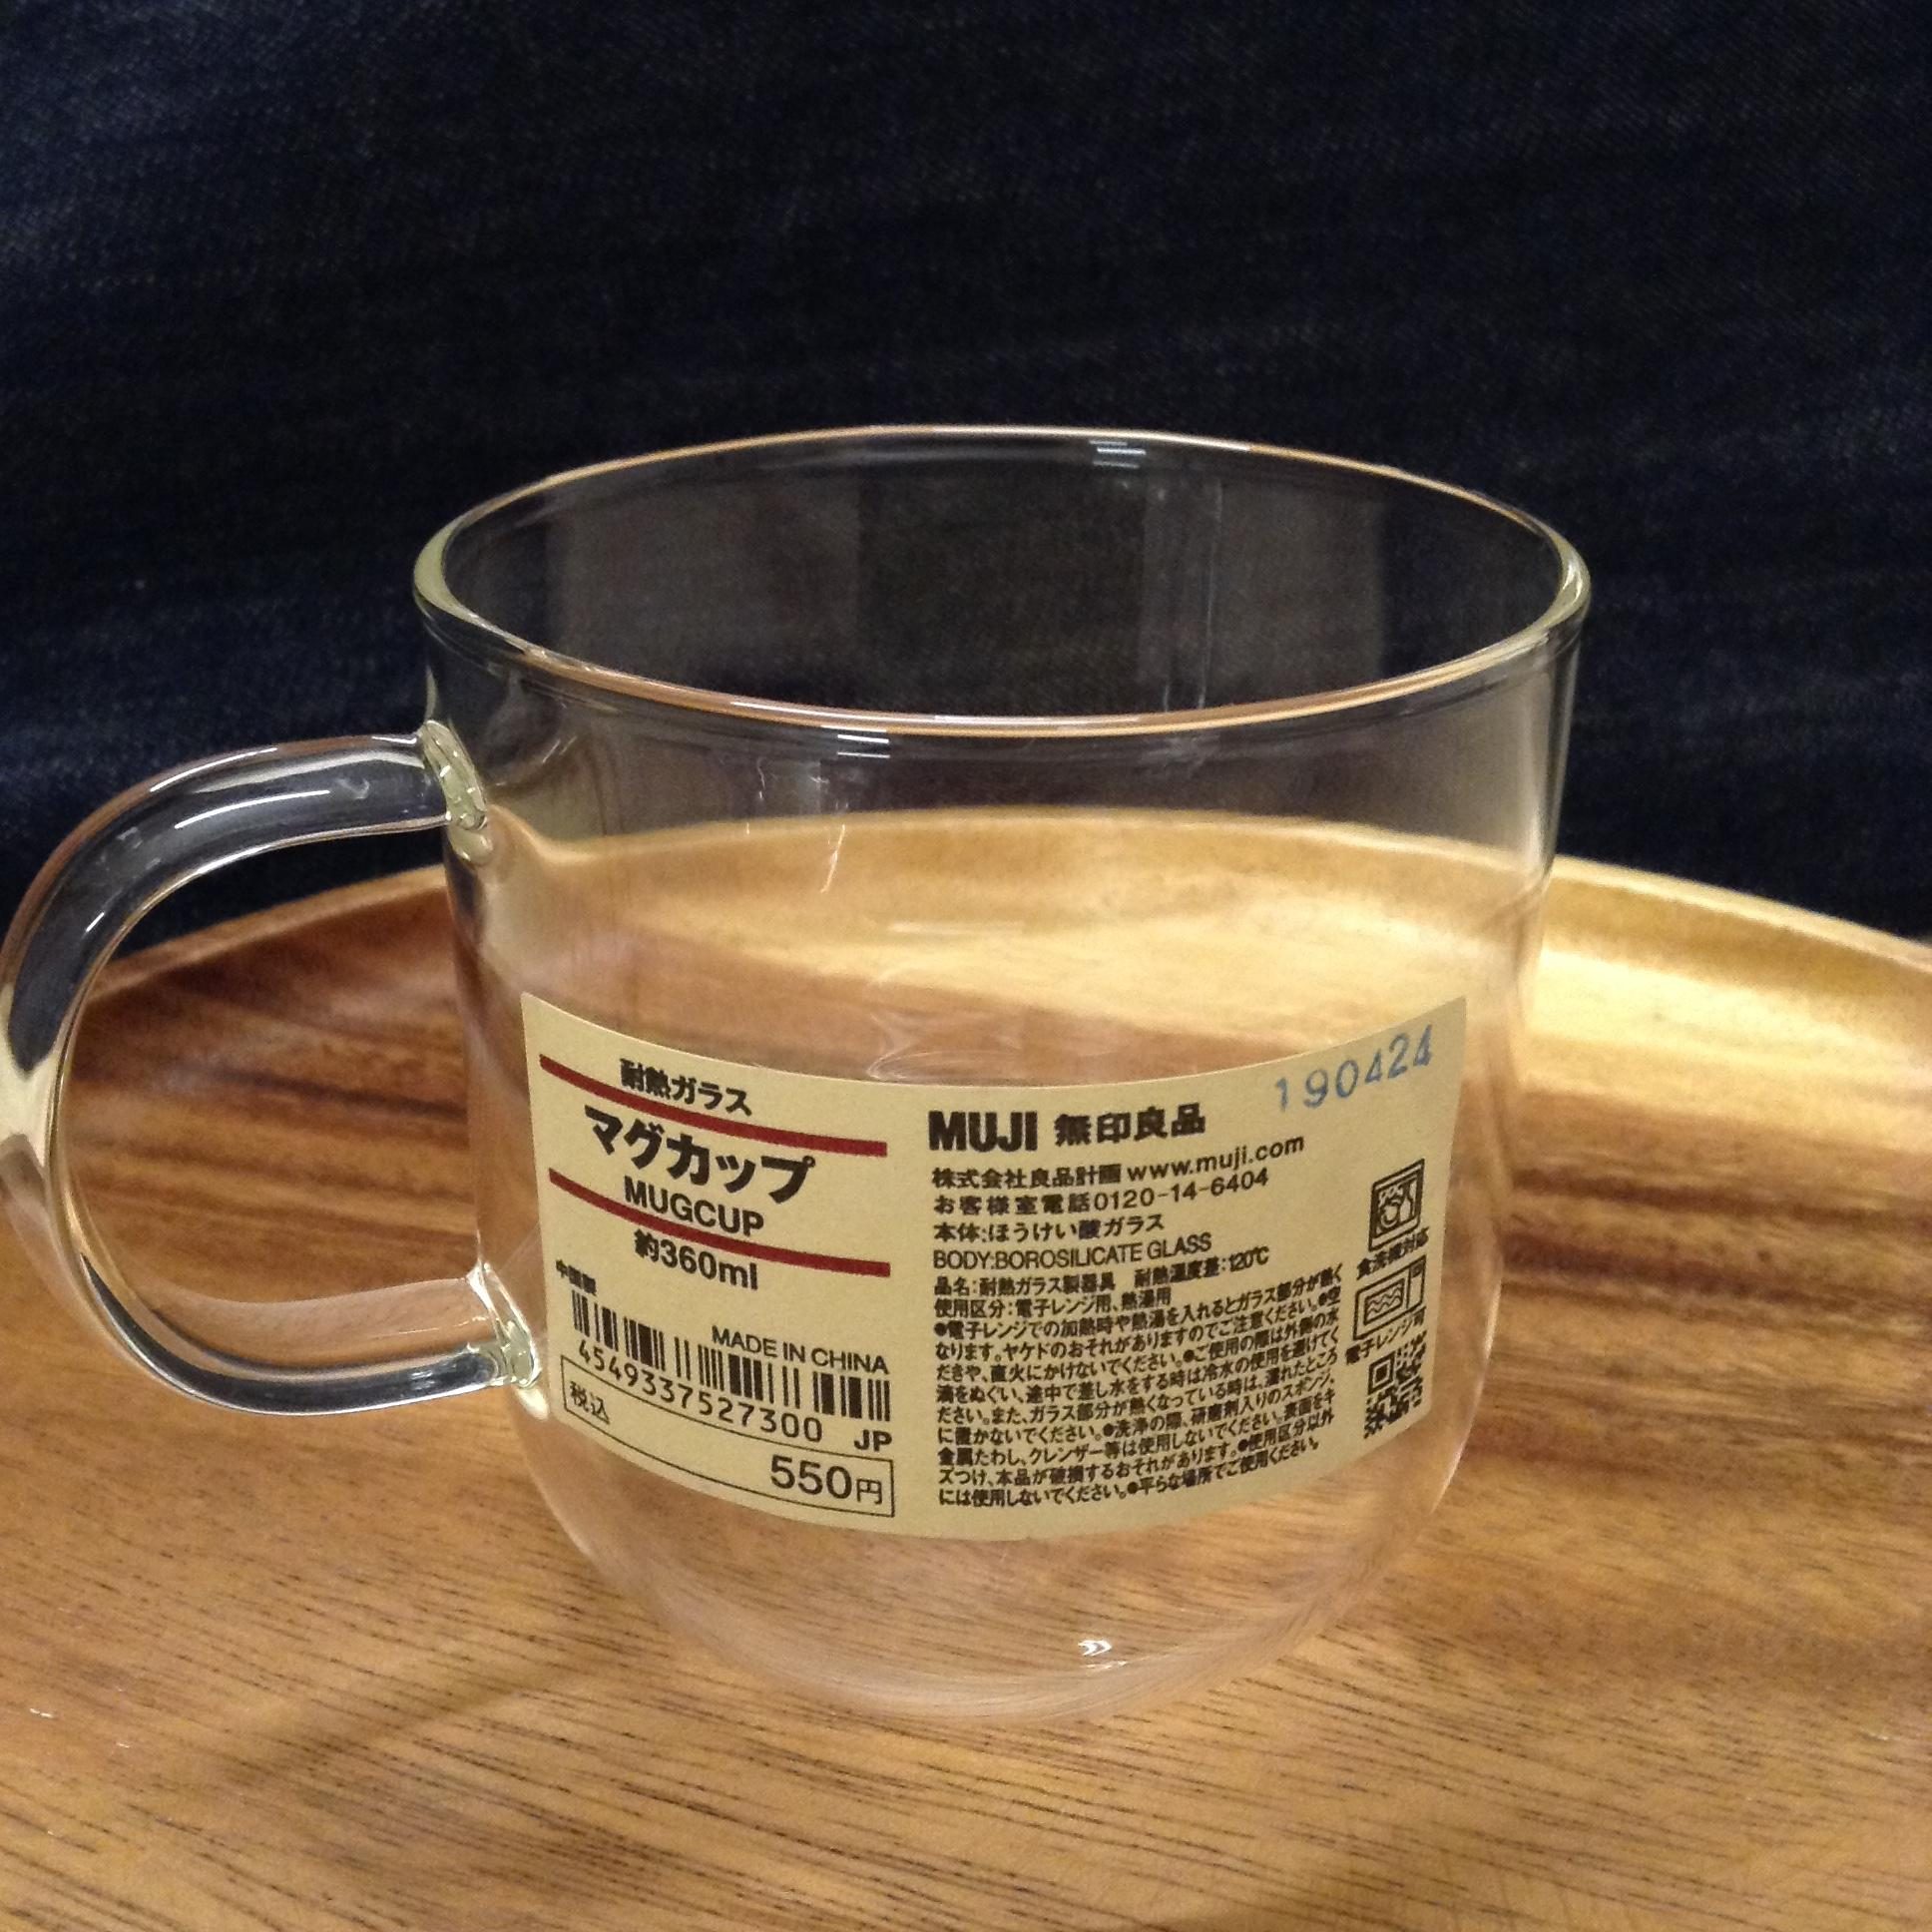 させぼ五番街 涼しげな耐熱ガラスのカップ スタッフのおすすめ 無印良品